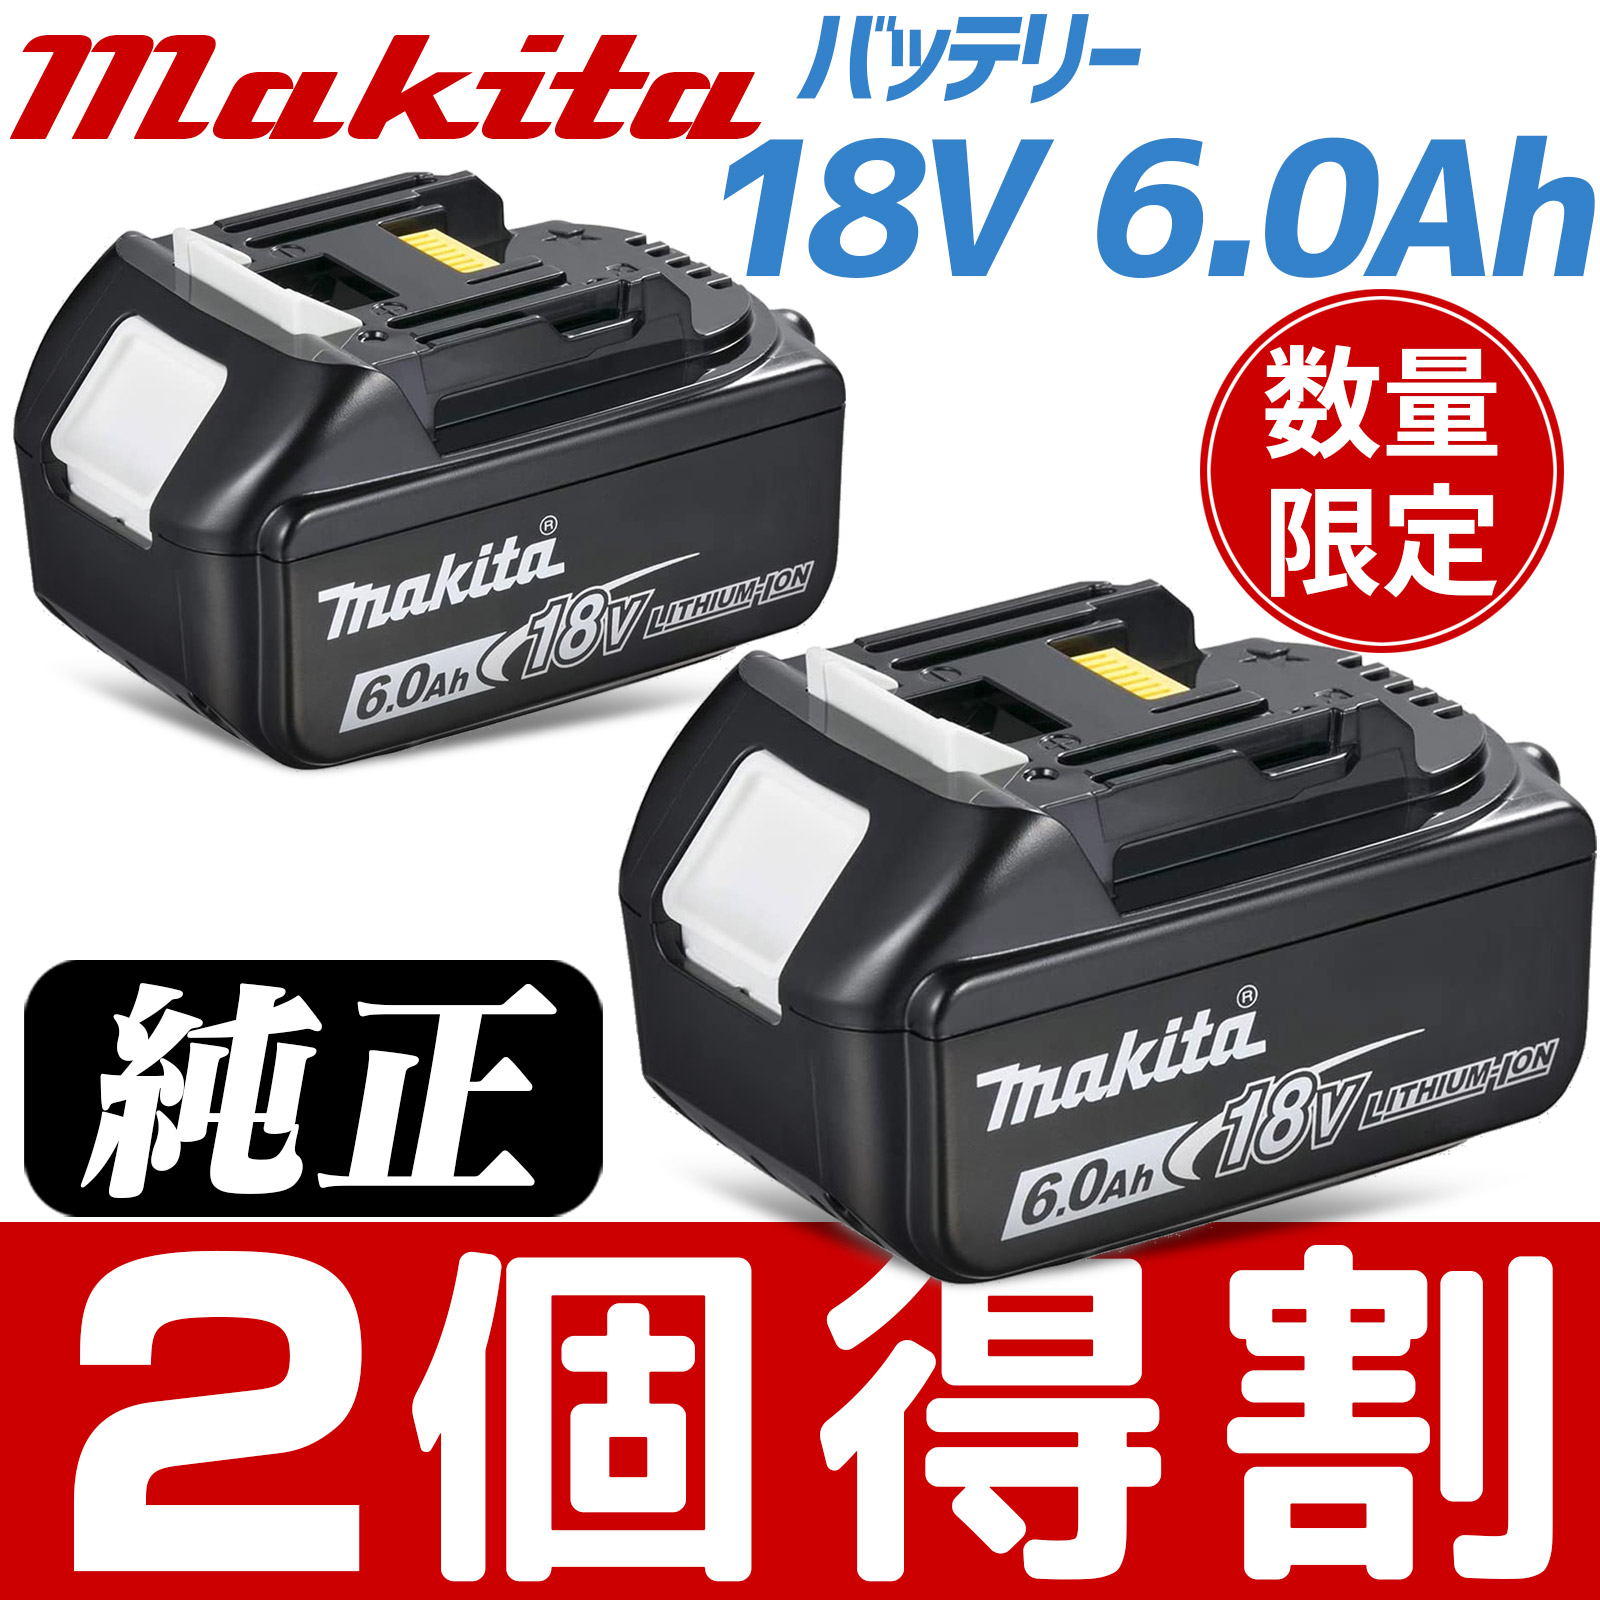 マキタ 電動工具 18vバッテリー 新作通販 6.0Ah お買い得 2個セット １年保証 td172dz 箱なし品 makita BL1860B 新品  A-60464